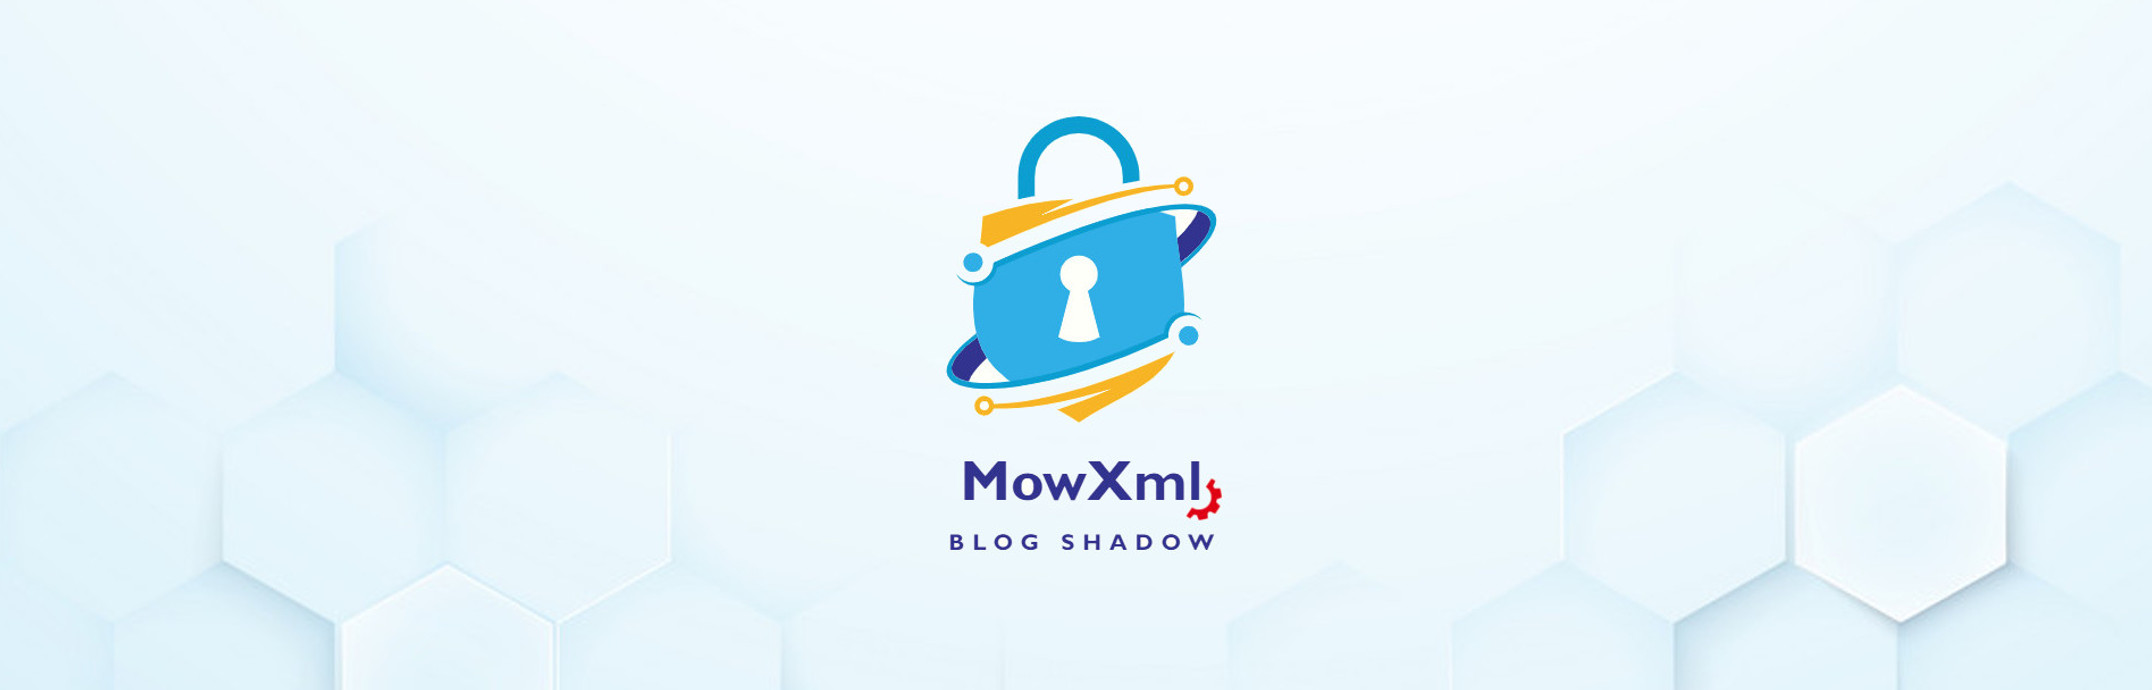 Blog Shadow